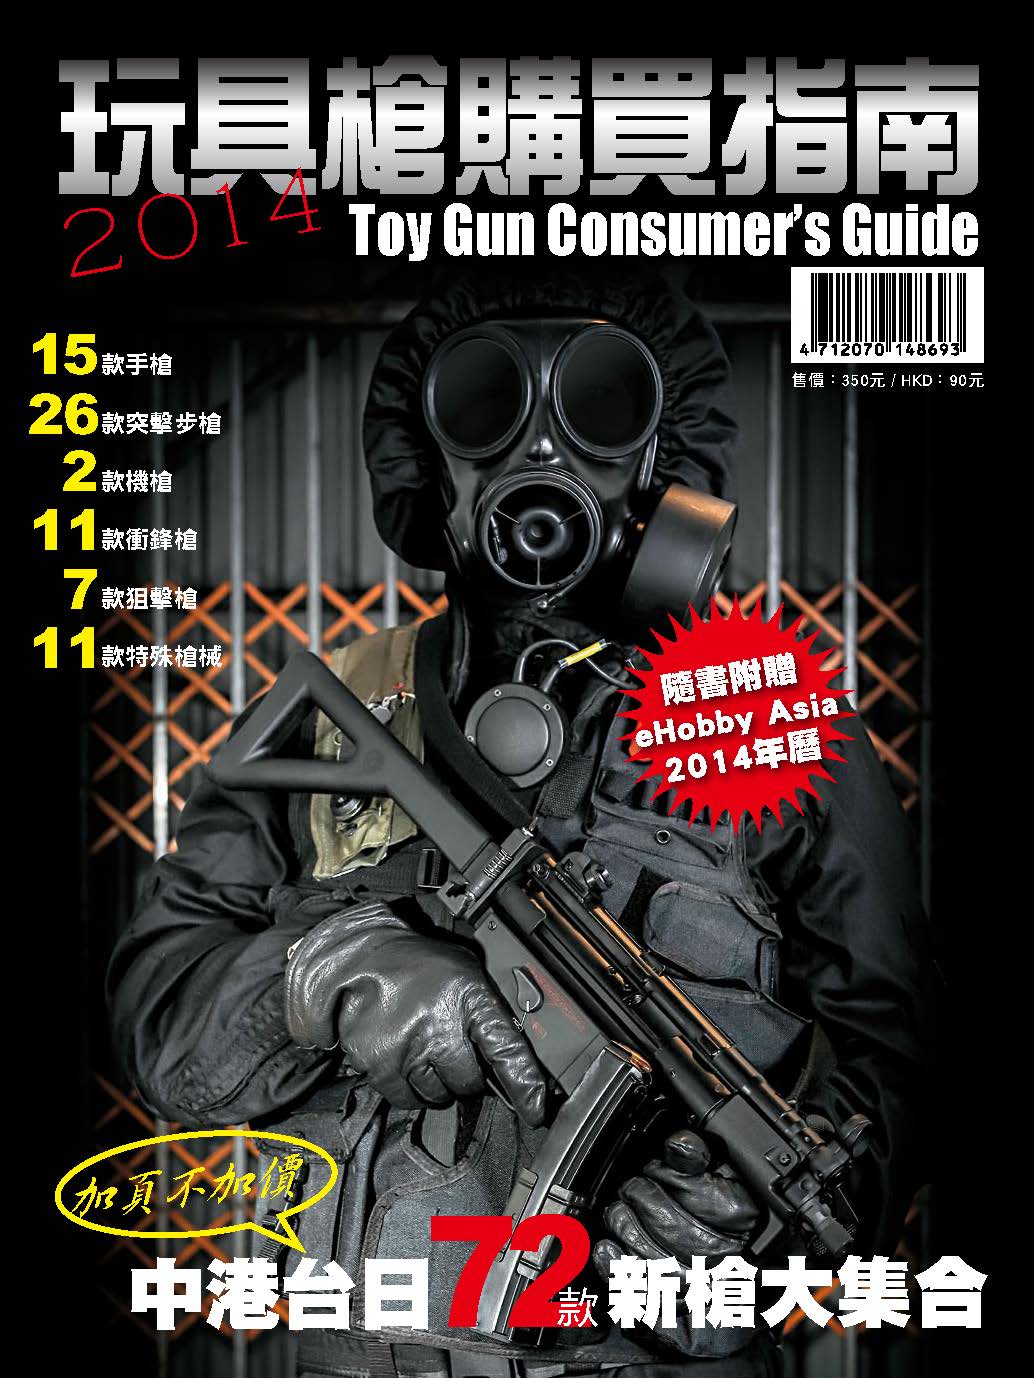 TGCG2014玩具槍購買指南